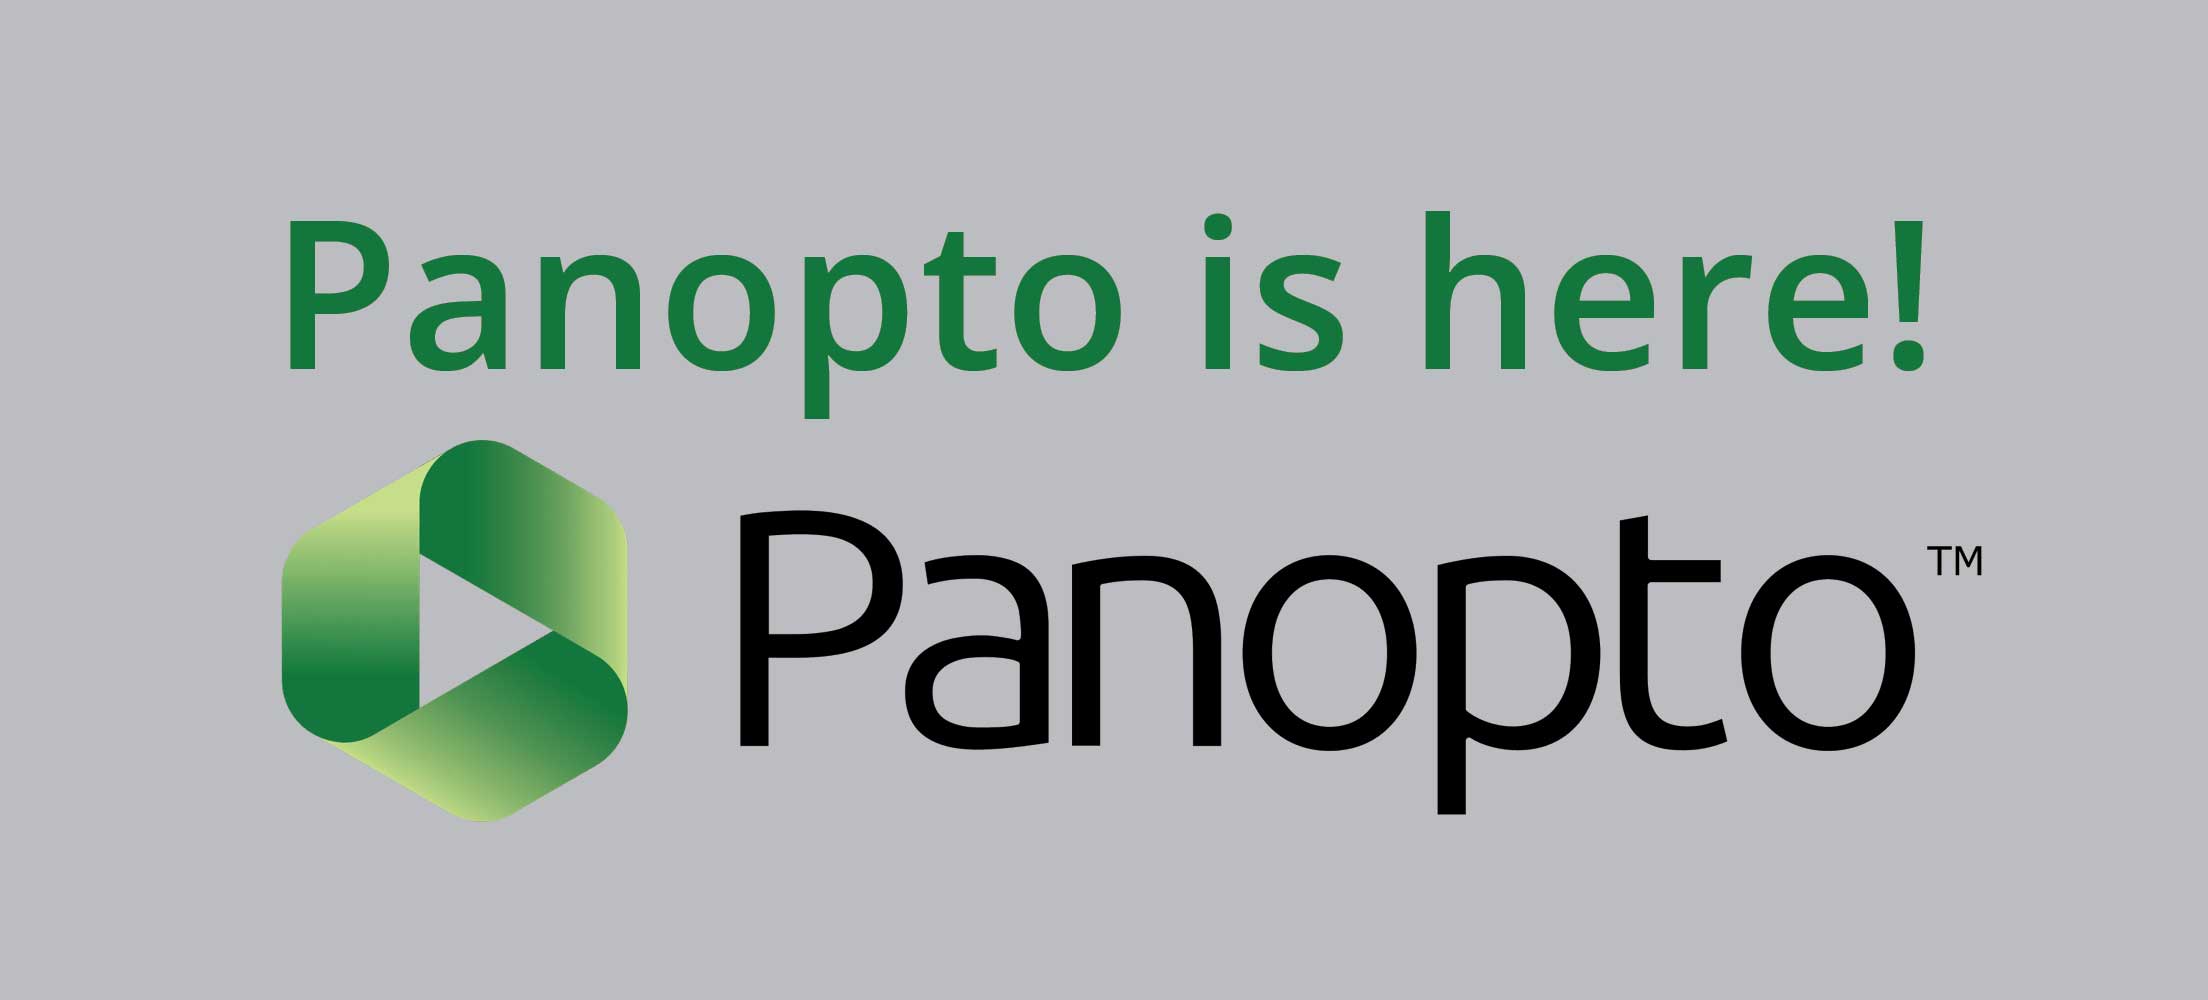 Panopto logo:  Panopto is here!